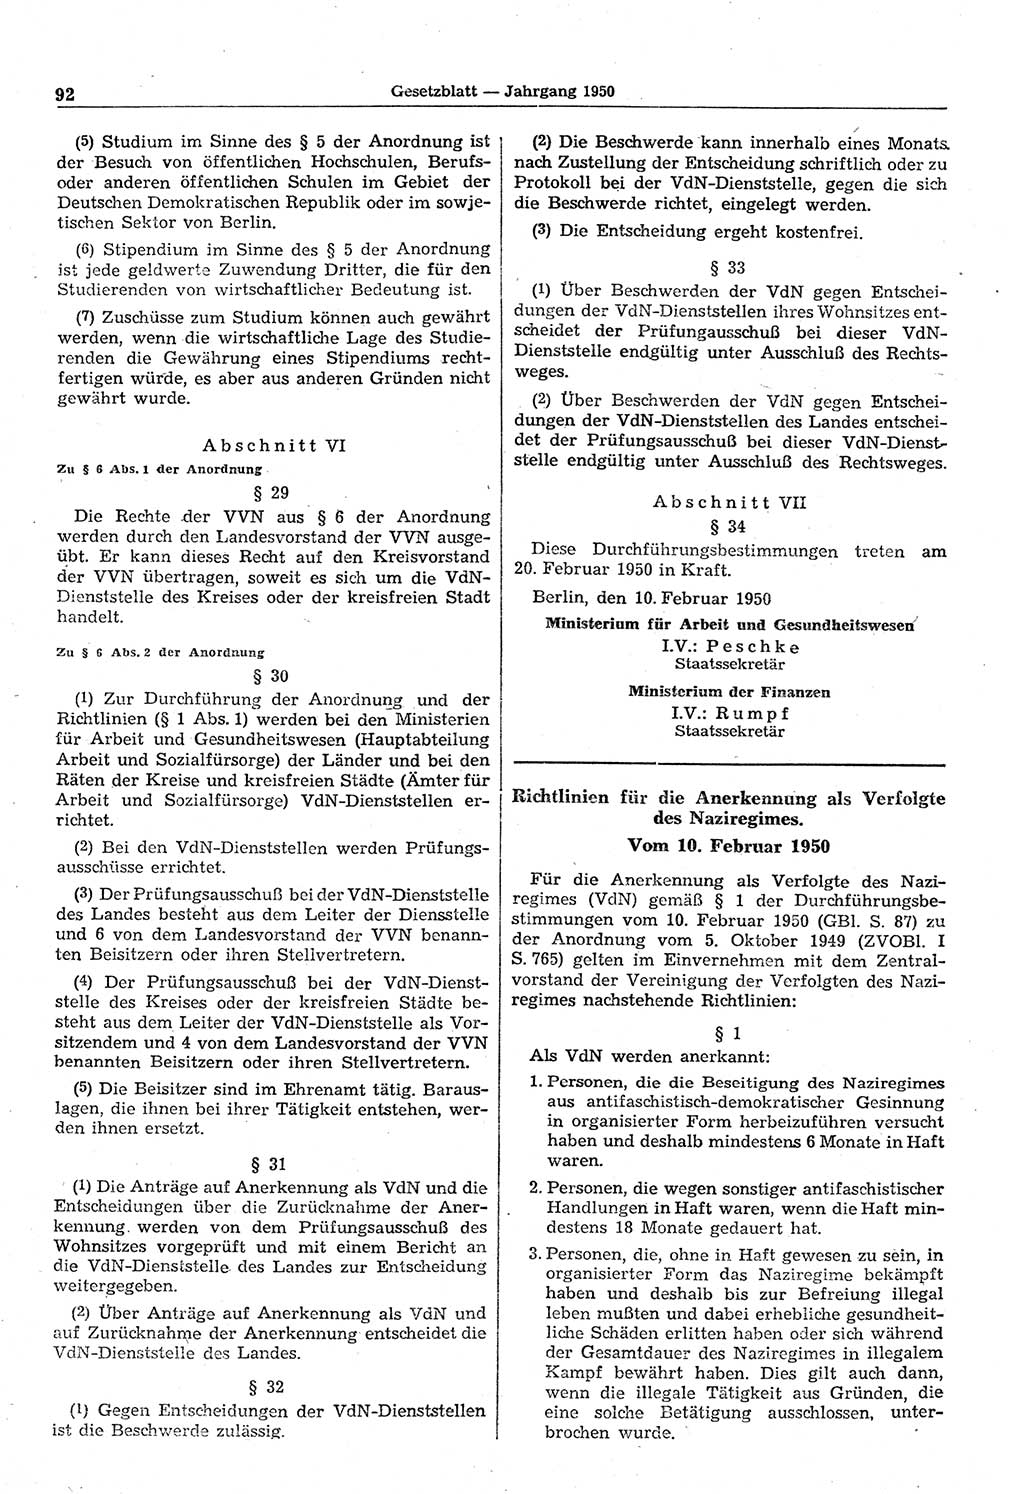 Gesetzblatt (GBl.) der Deutschen Demokratischen Republik (DDR) 1950, Seite 92 (GBl. DDR 1950, S. 92)